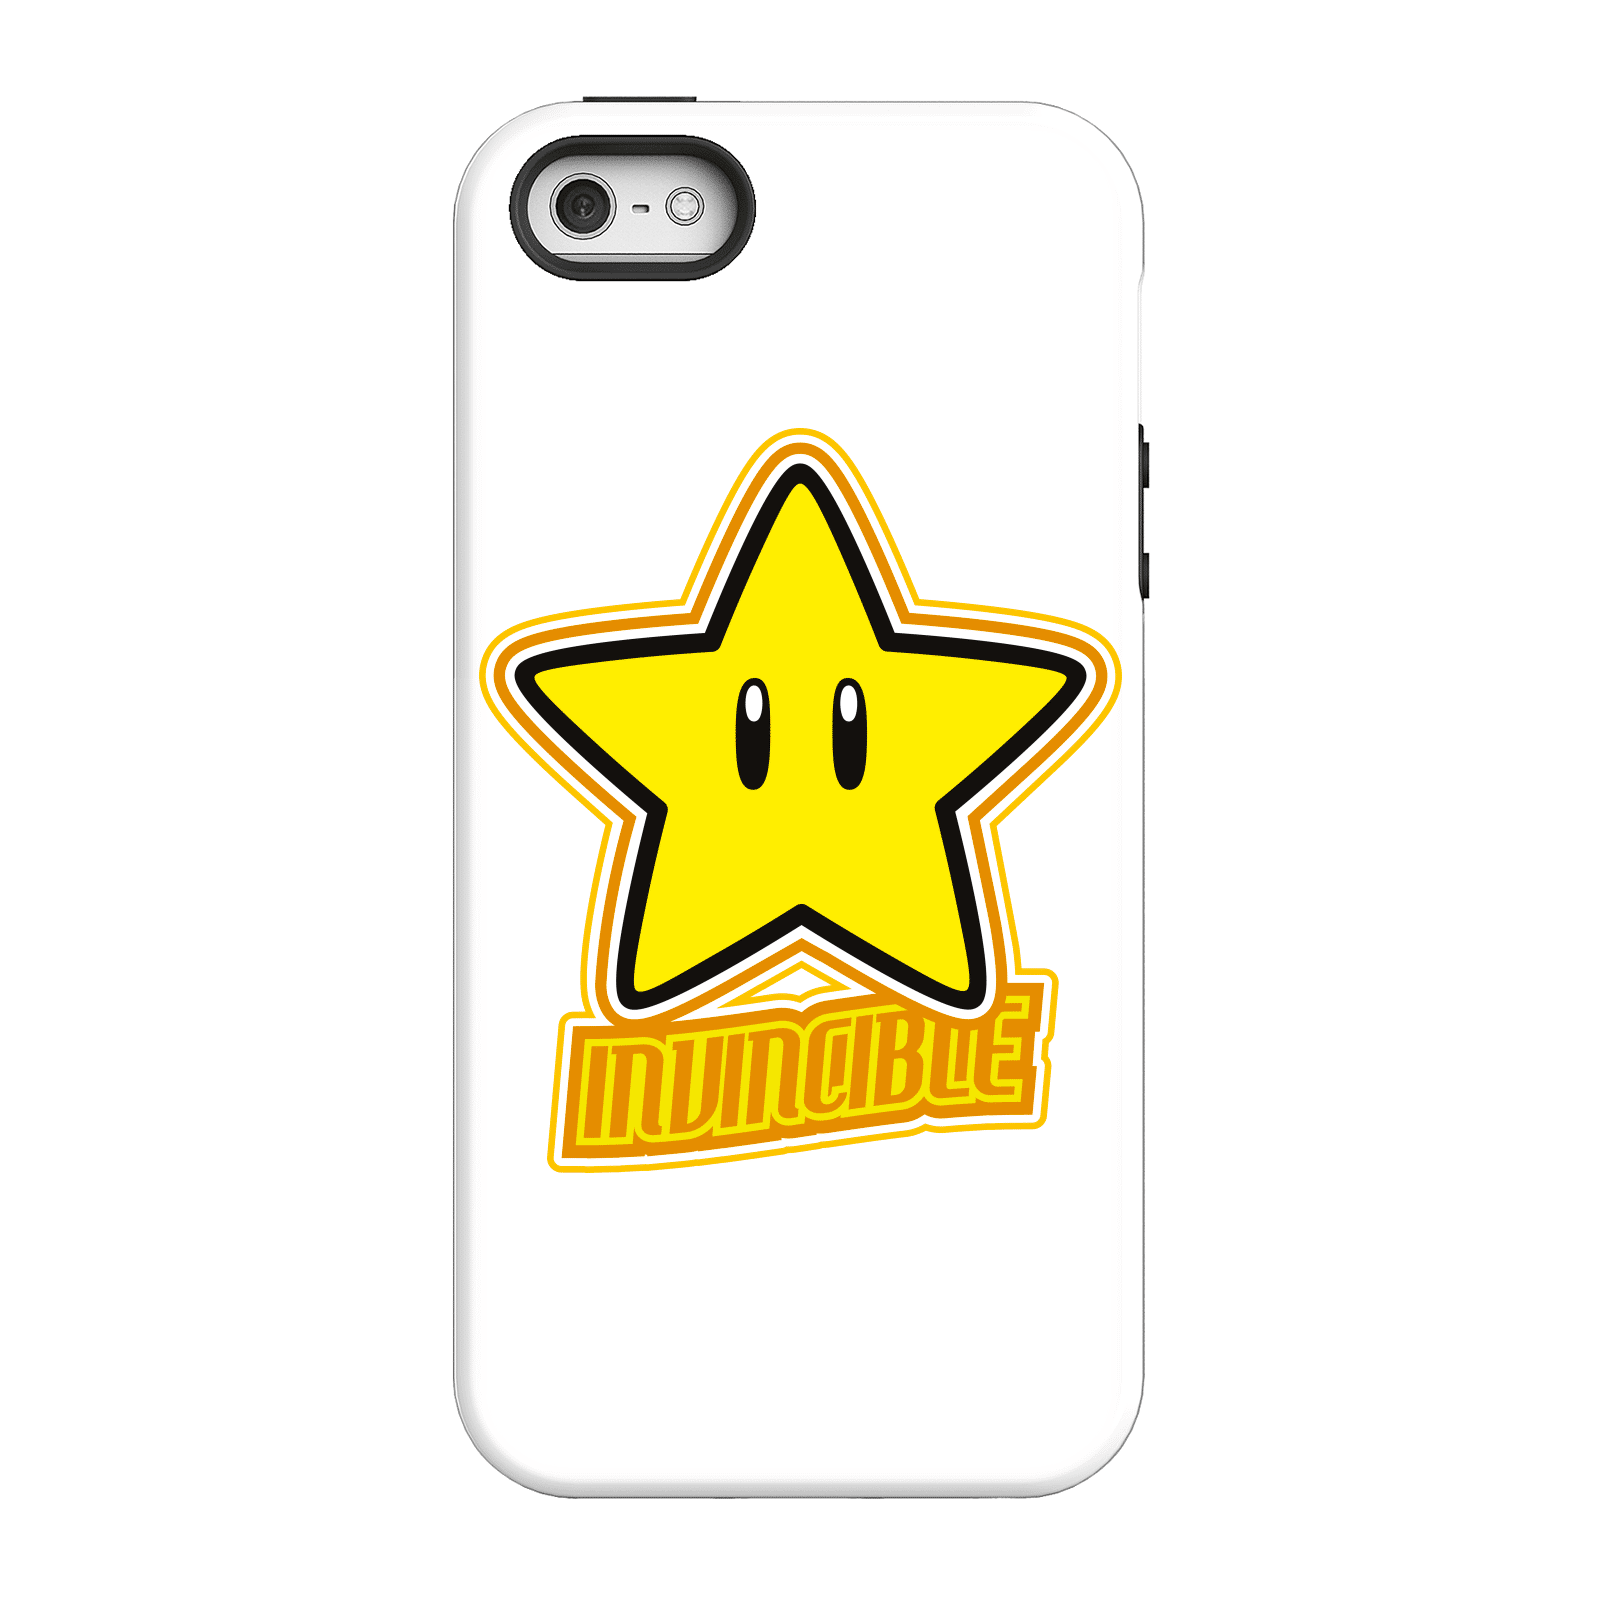 Nintendo Super Mario Invincible Phone Case - iPhone 5/5s - Tough Case - Gloss